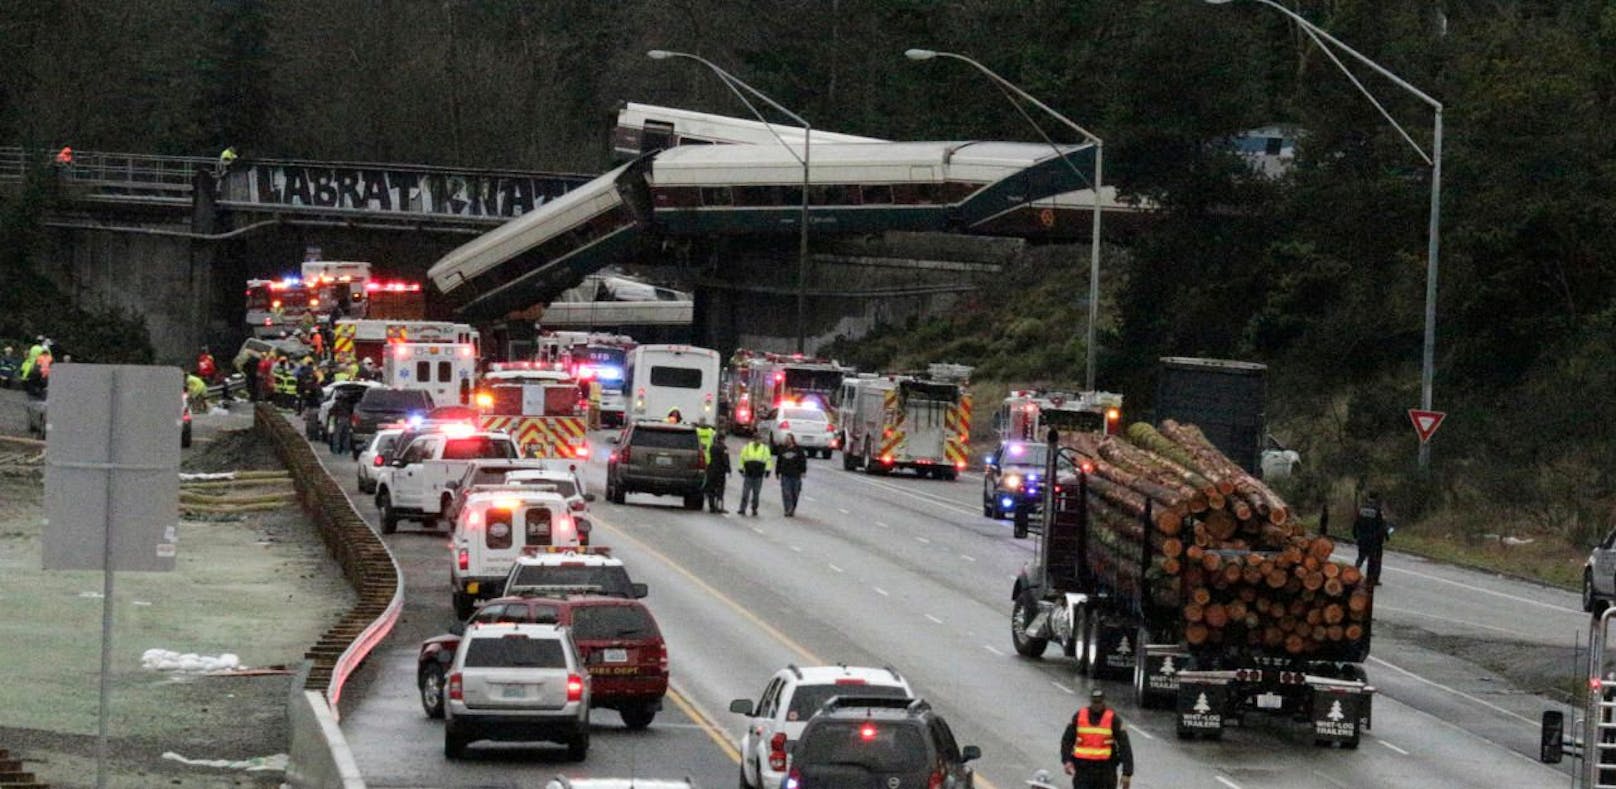 Bei einem Zugunglück in Washington wurden mindestens sechs Menschen getötet.